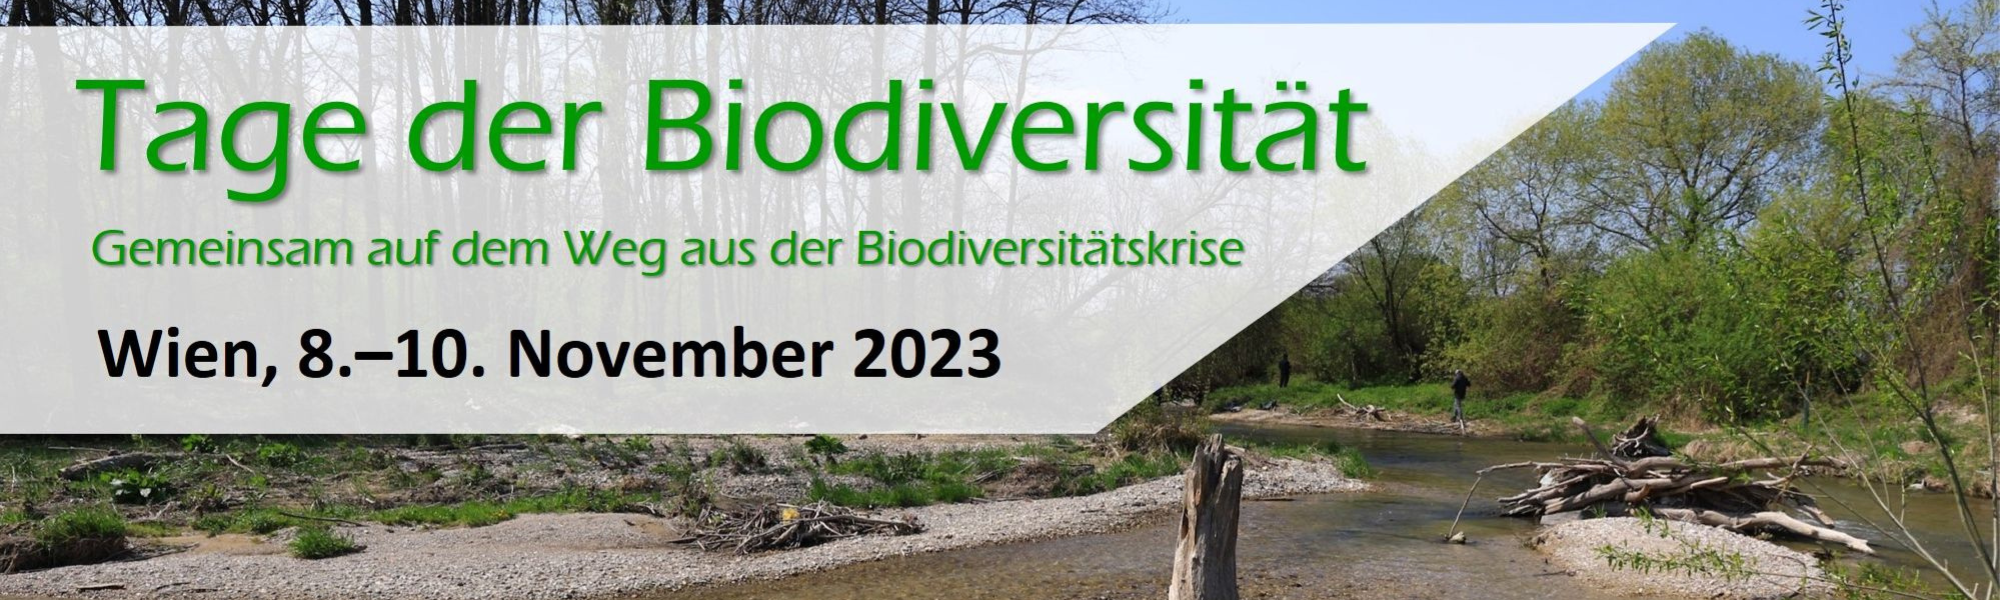 Tage der Biodiversität – Gemeinsam auf dem Weg aus der Biodiversitätskrise